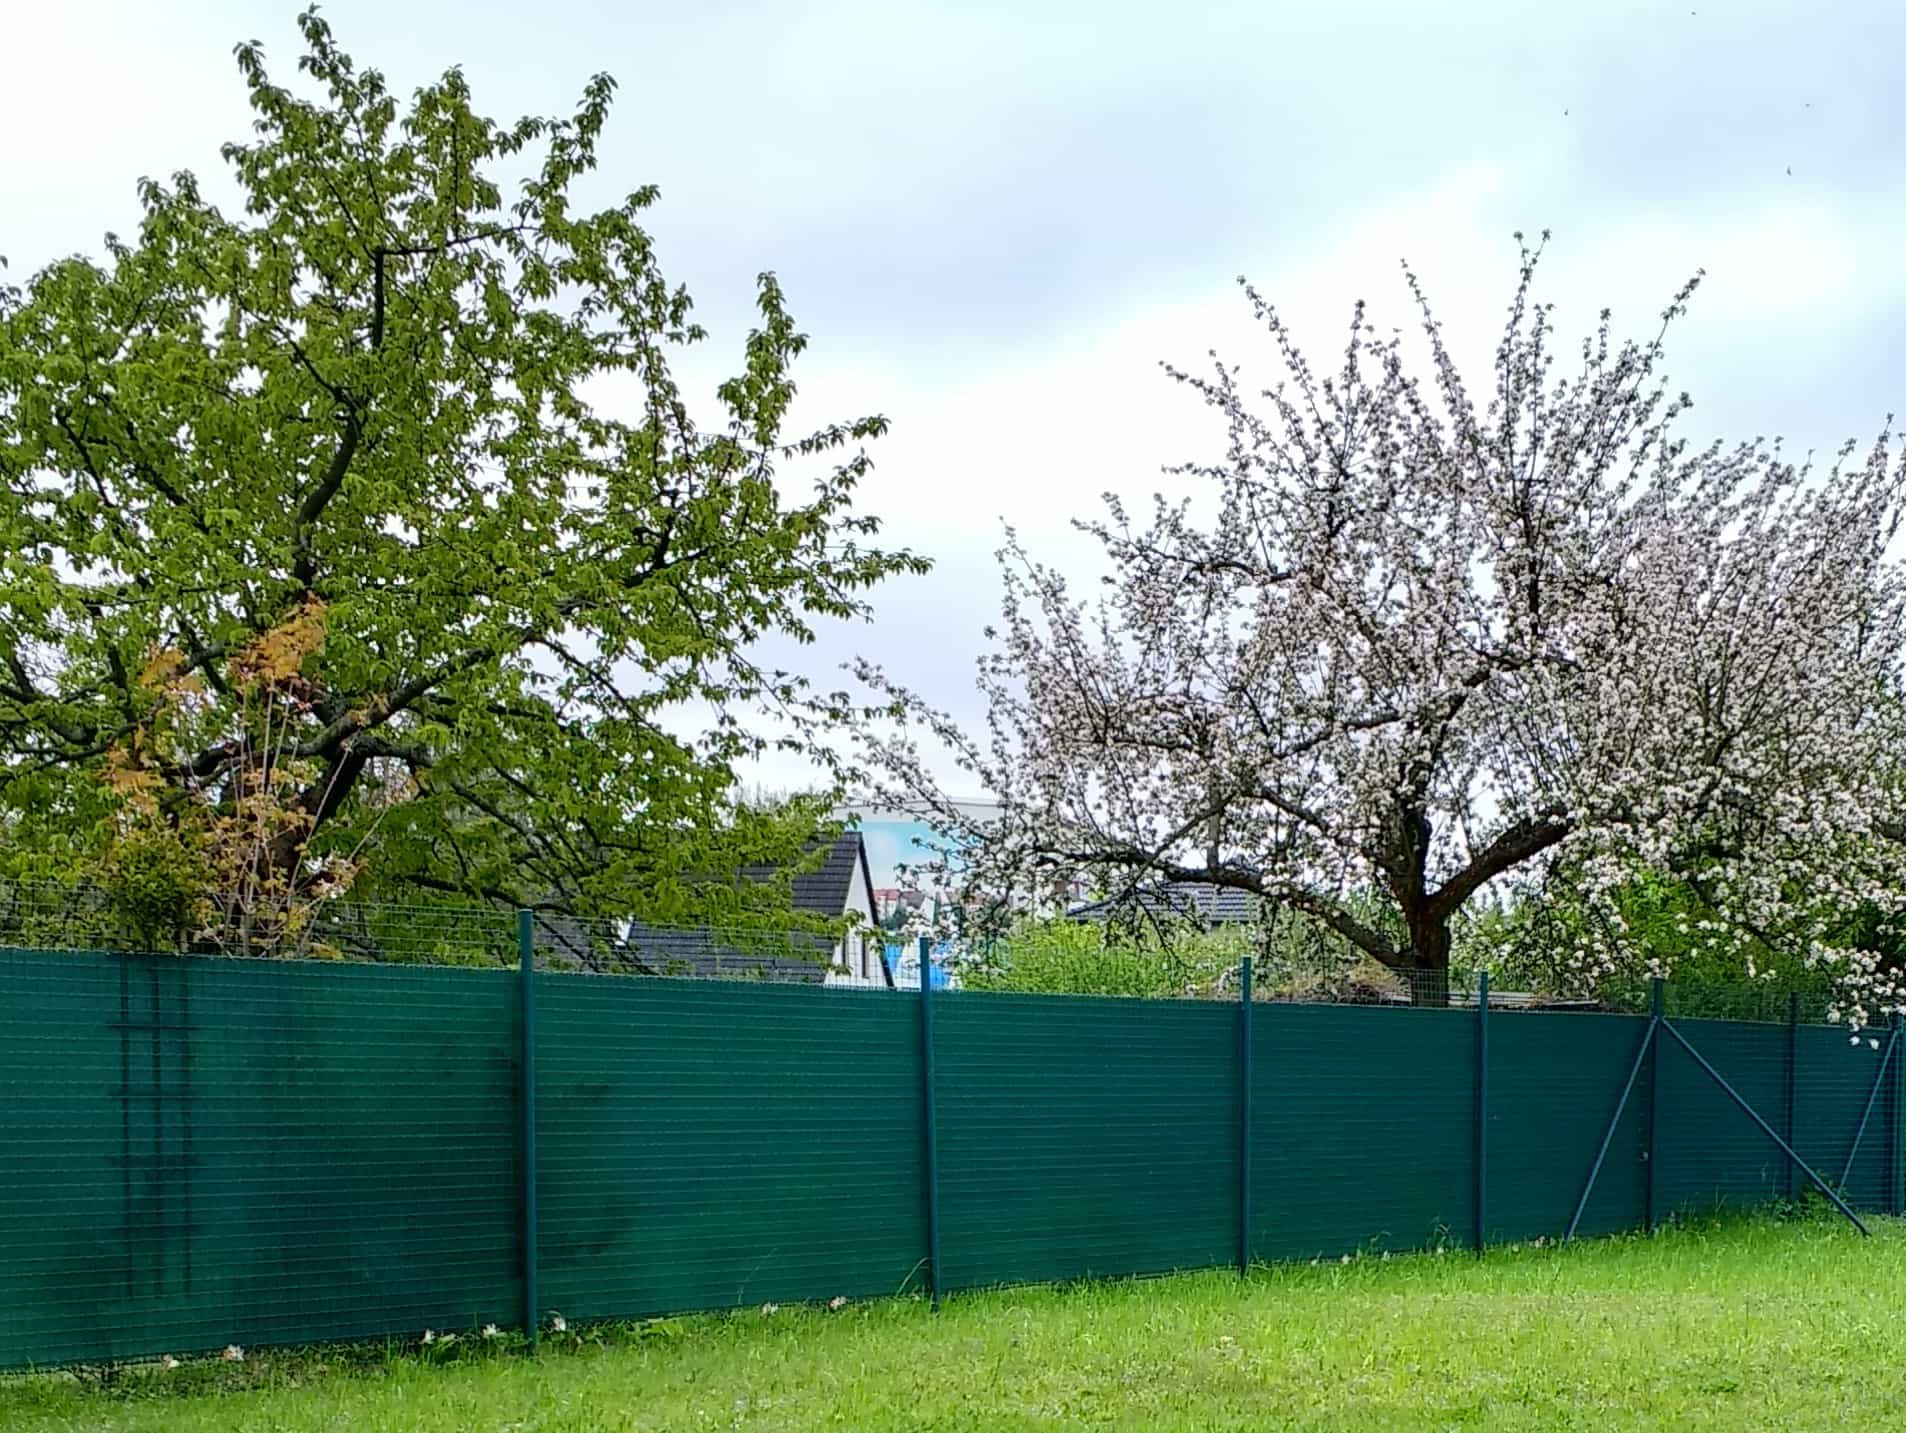 Windschutznetz am Wiesenrand vor einem Obstbaum